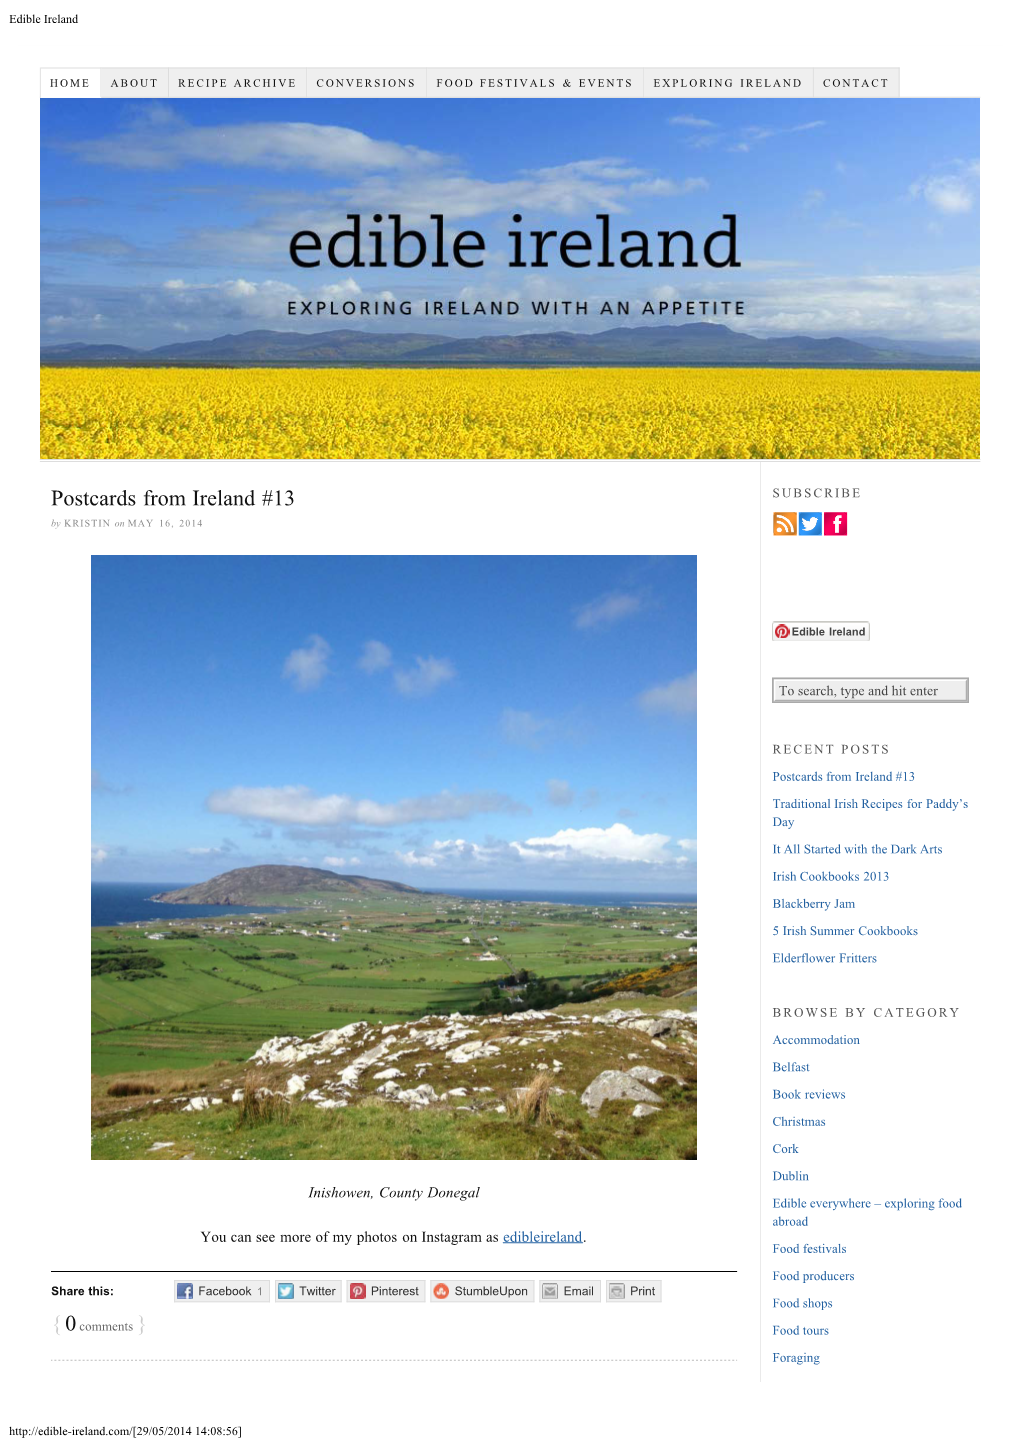 Edible Ireland